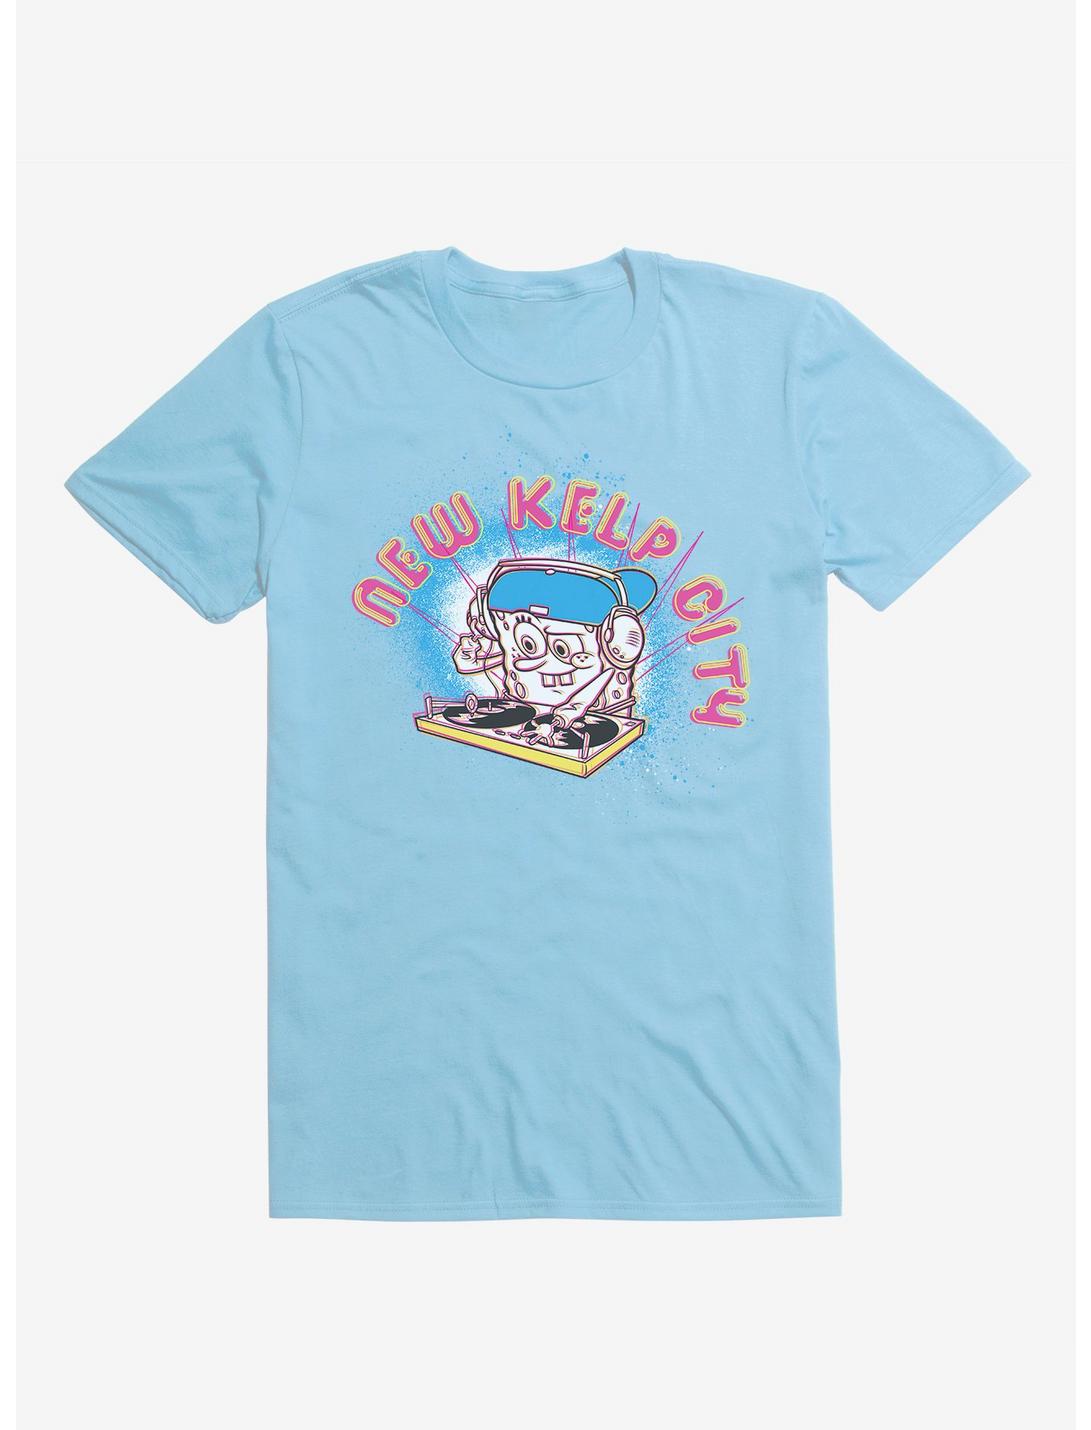 SpongeBob New Kelp City Soak it Up T-Shirt, , hi-res